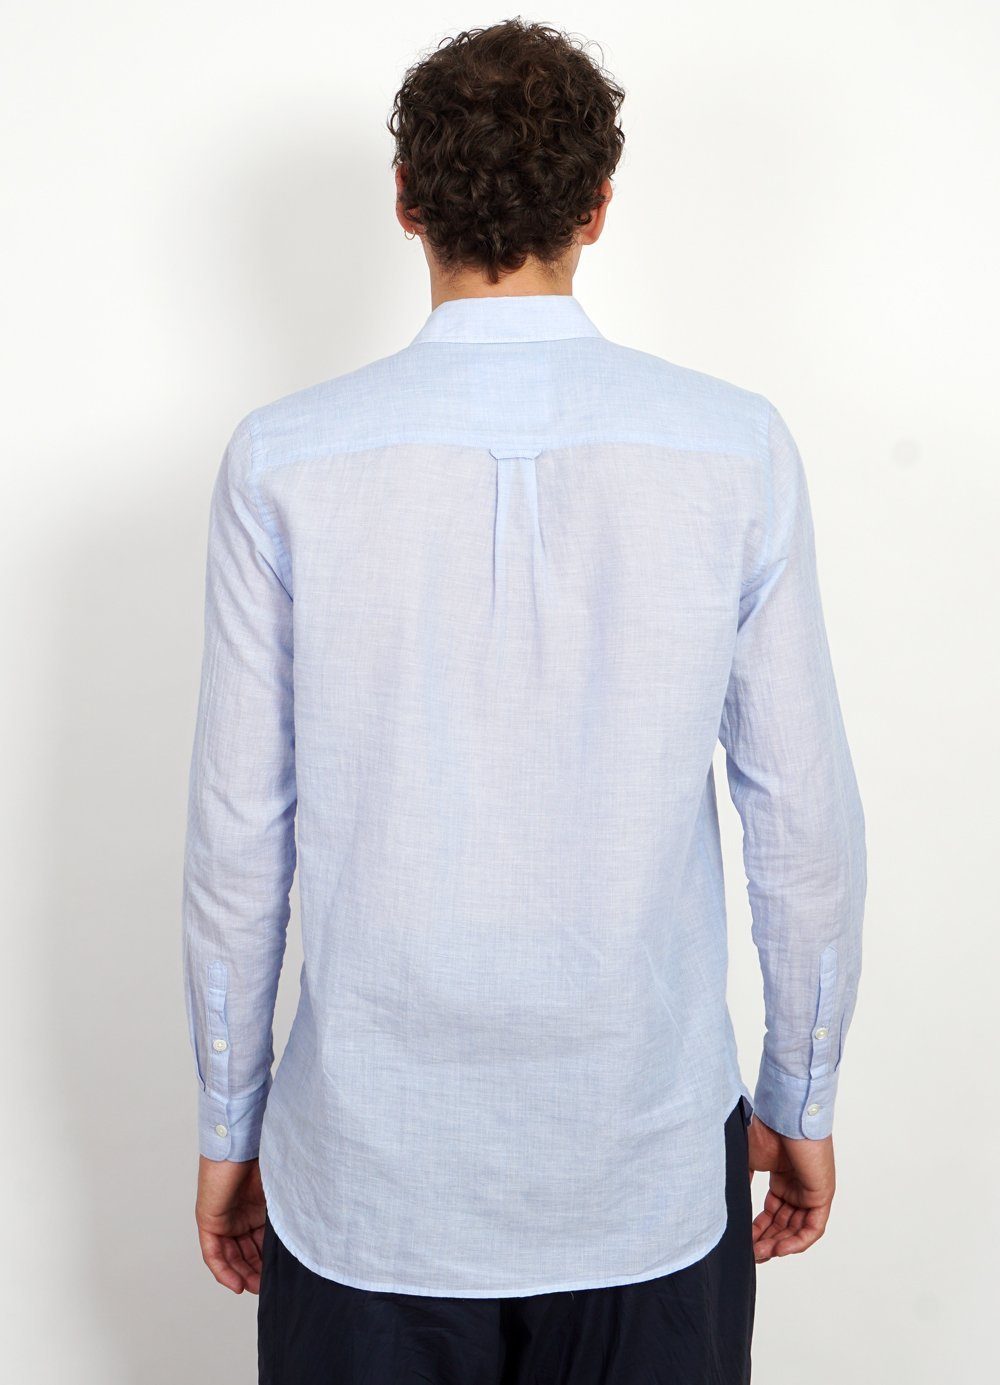 HENNING | Casual Classic Shirt | Sky Blue -HANSEN Garments- HANSEN Garments